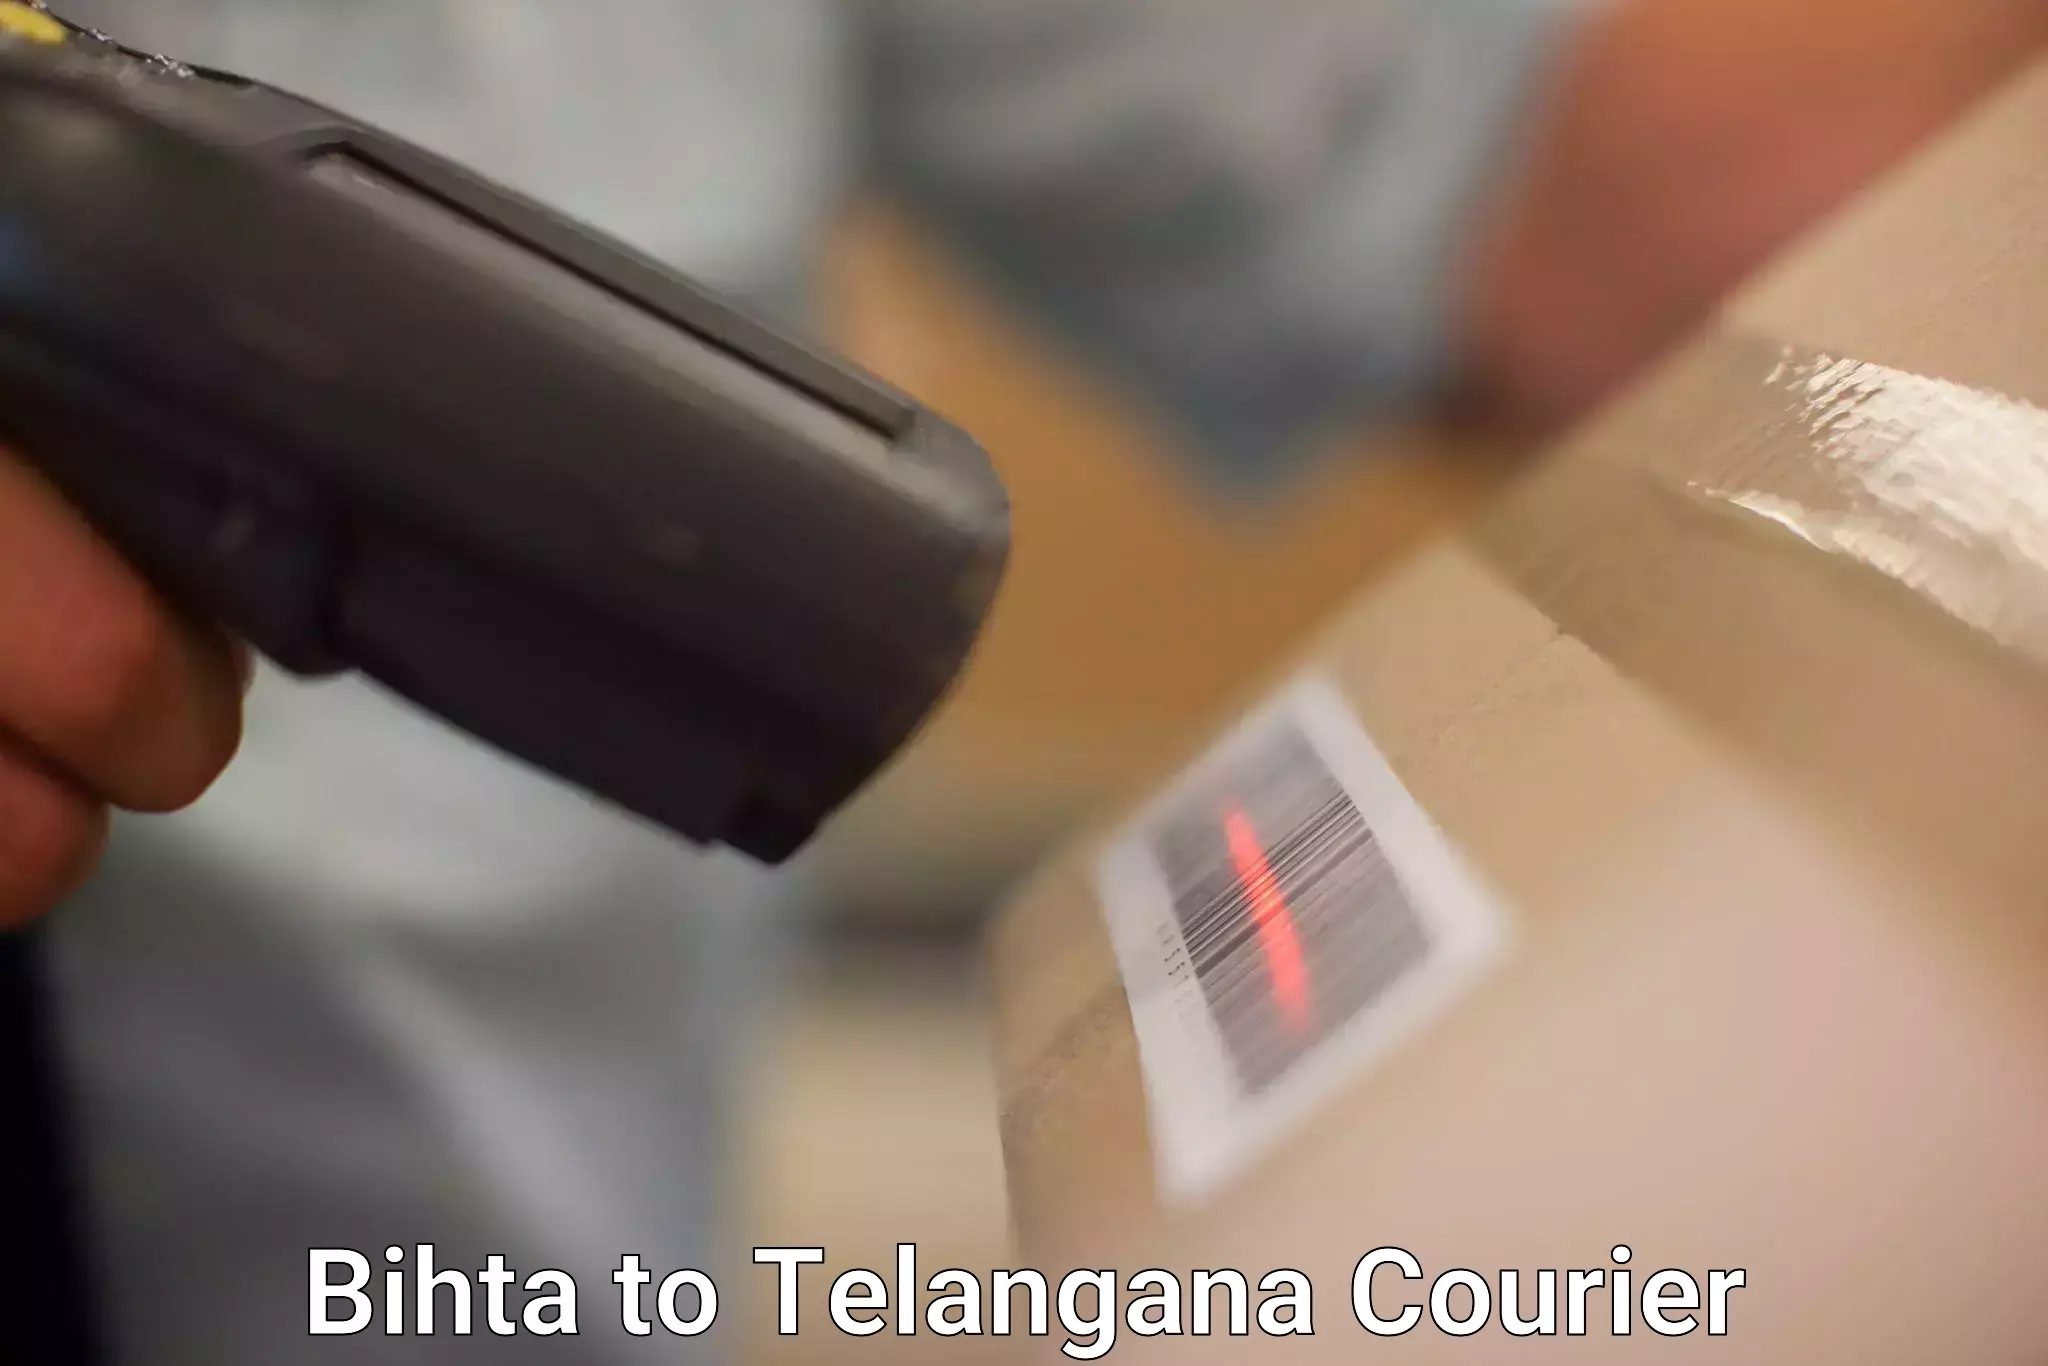 Premium courier services Bihta to Jannaram